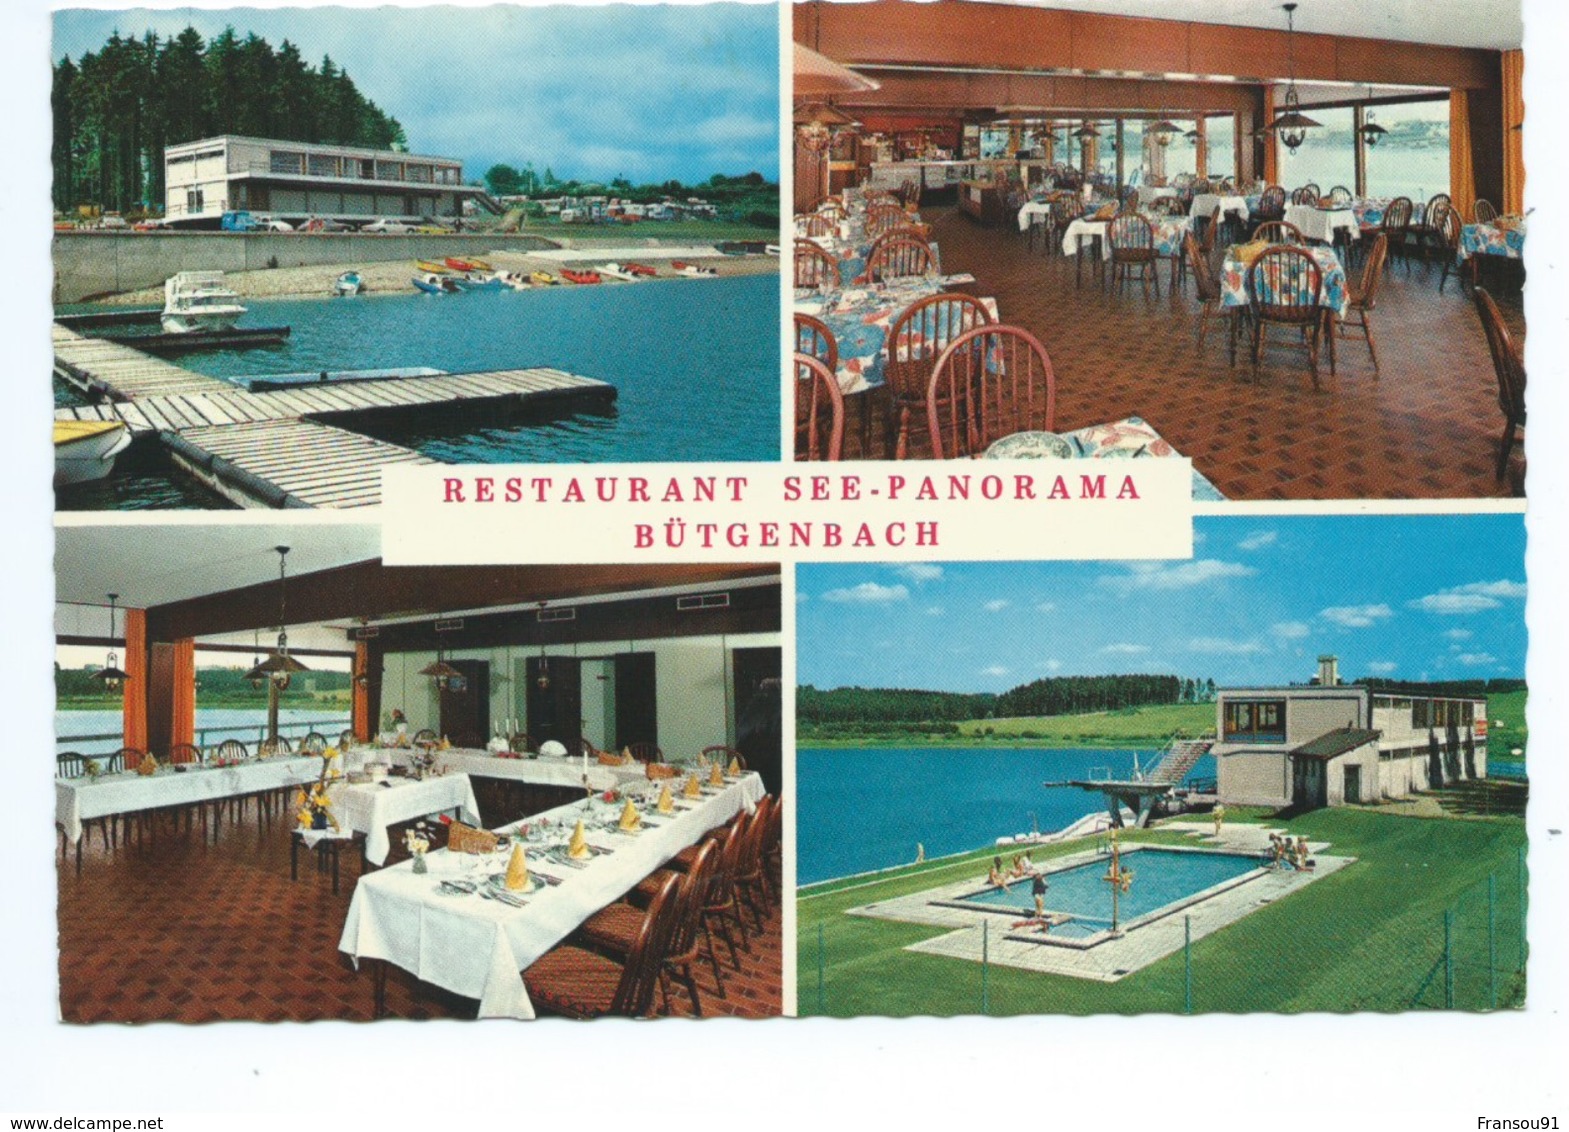 Butgenbach Restaurant See Panorama - Butgenbach - Buetgenbach